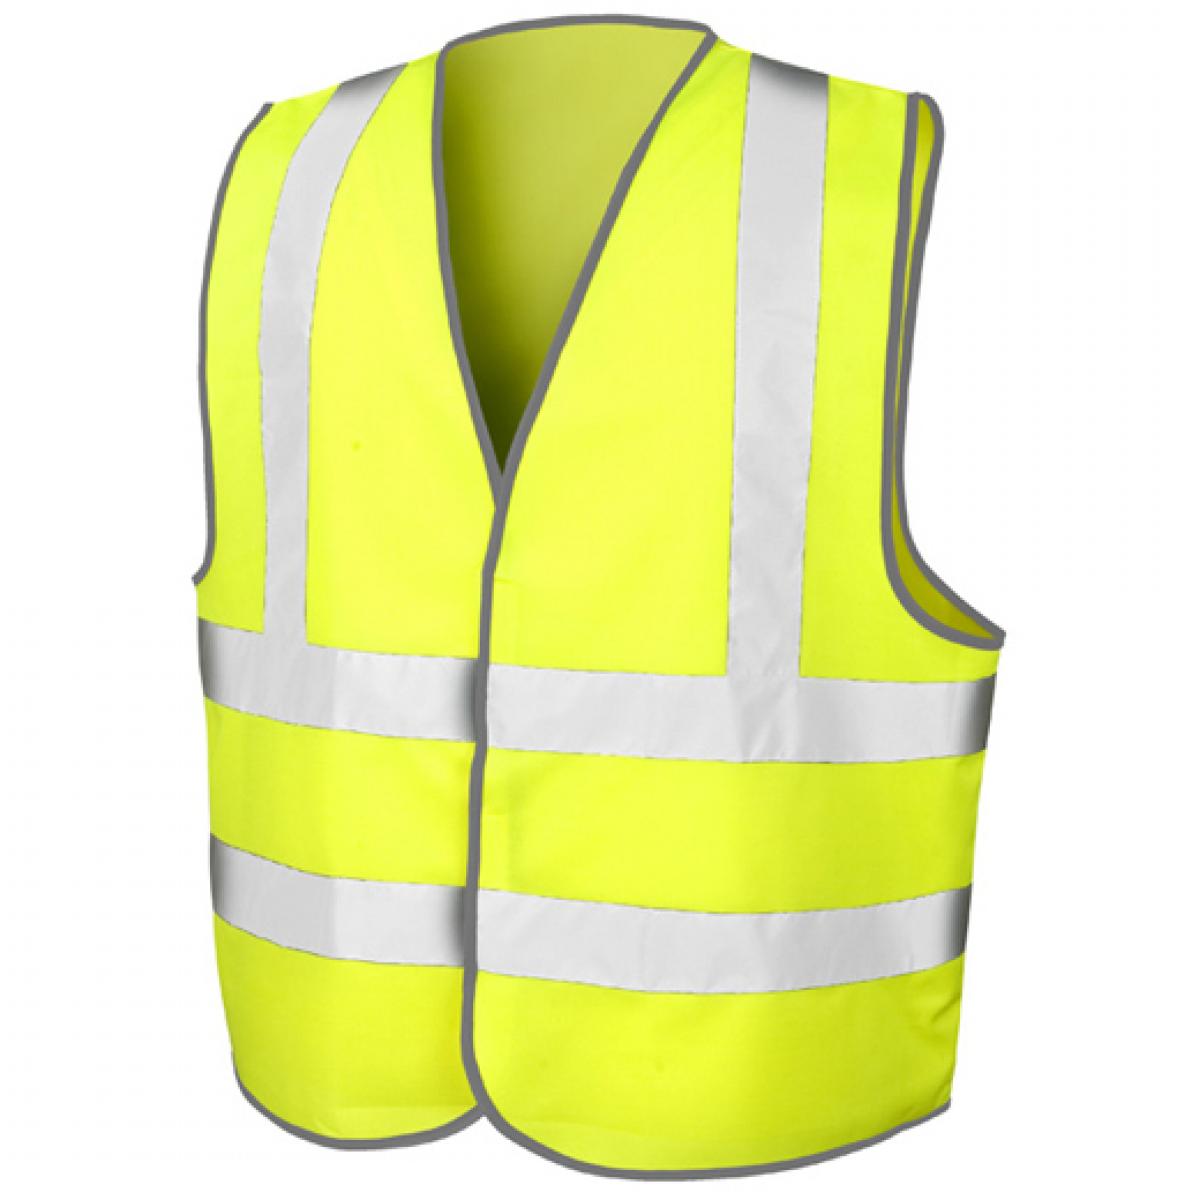 Hersteller: Result Core Herstellernummer: R201X Artikelbezeichnung: Herren Motorway Vest / Zertifiziert nach ISOEN20471:2013 Farbe: Fluorescent Yellow